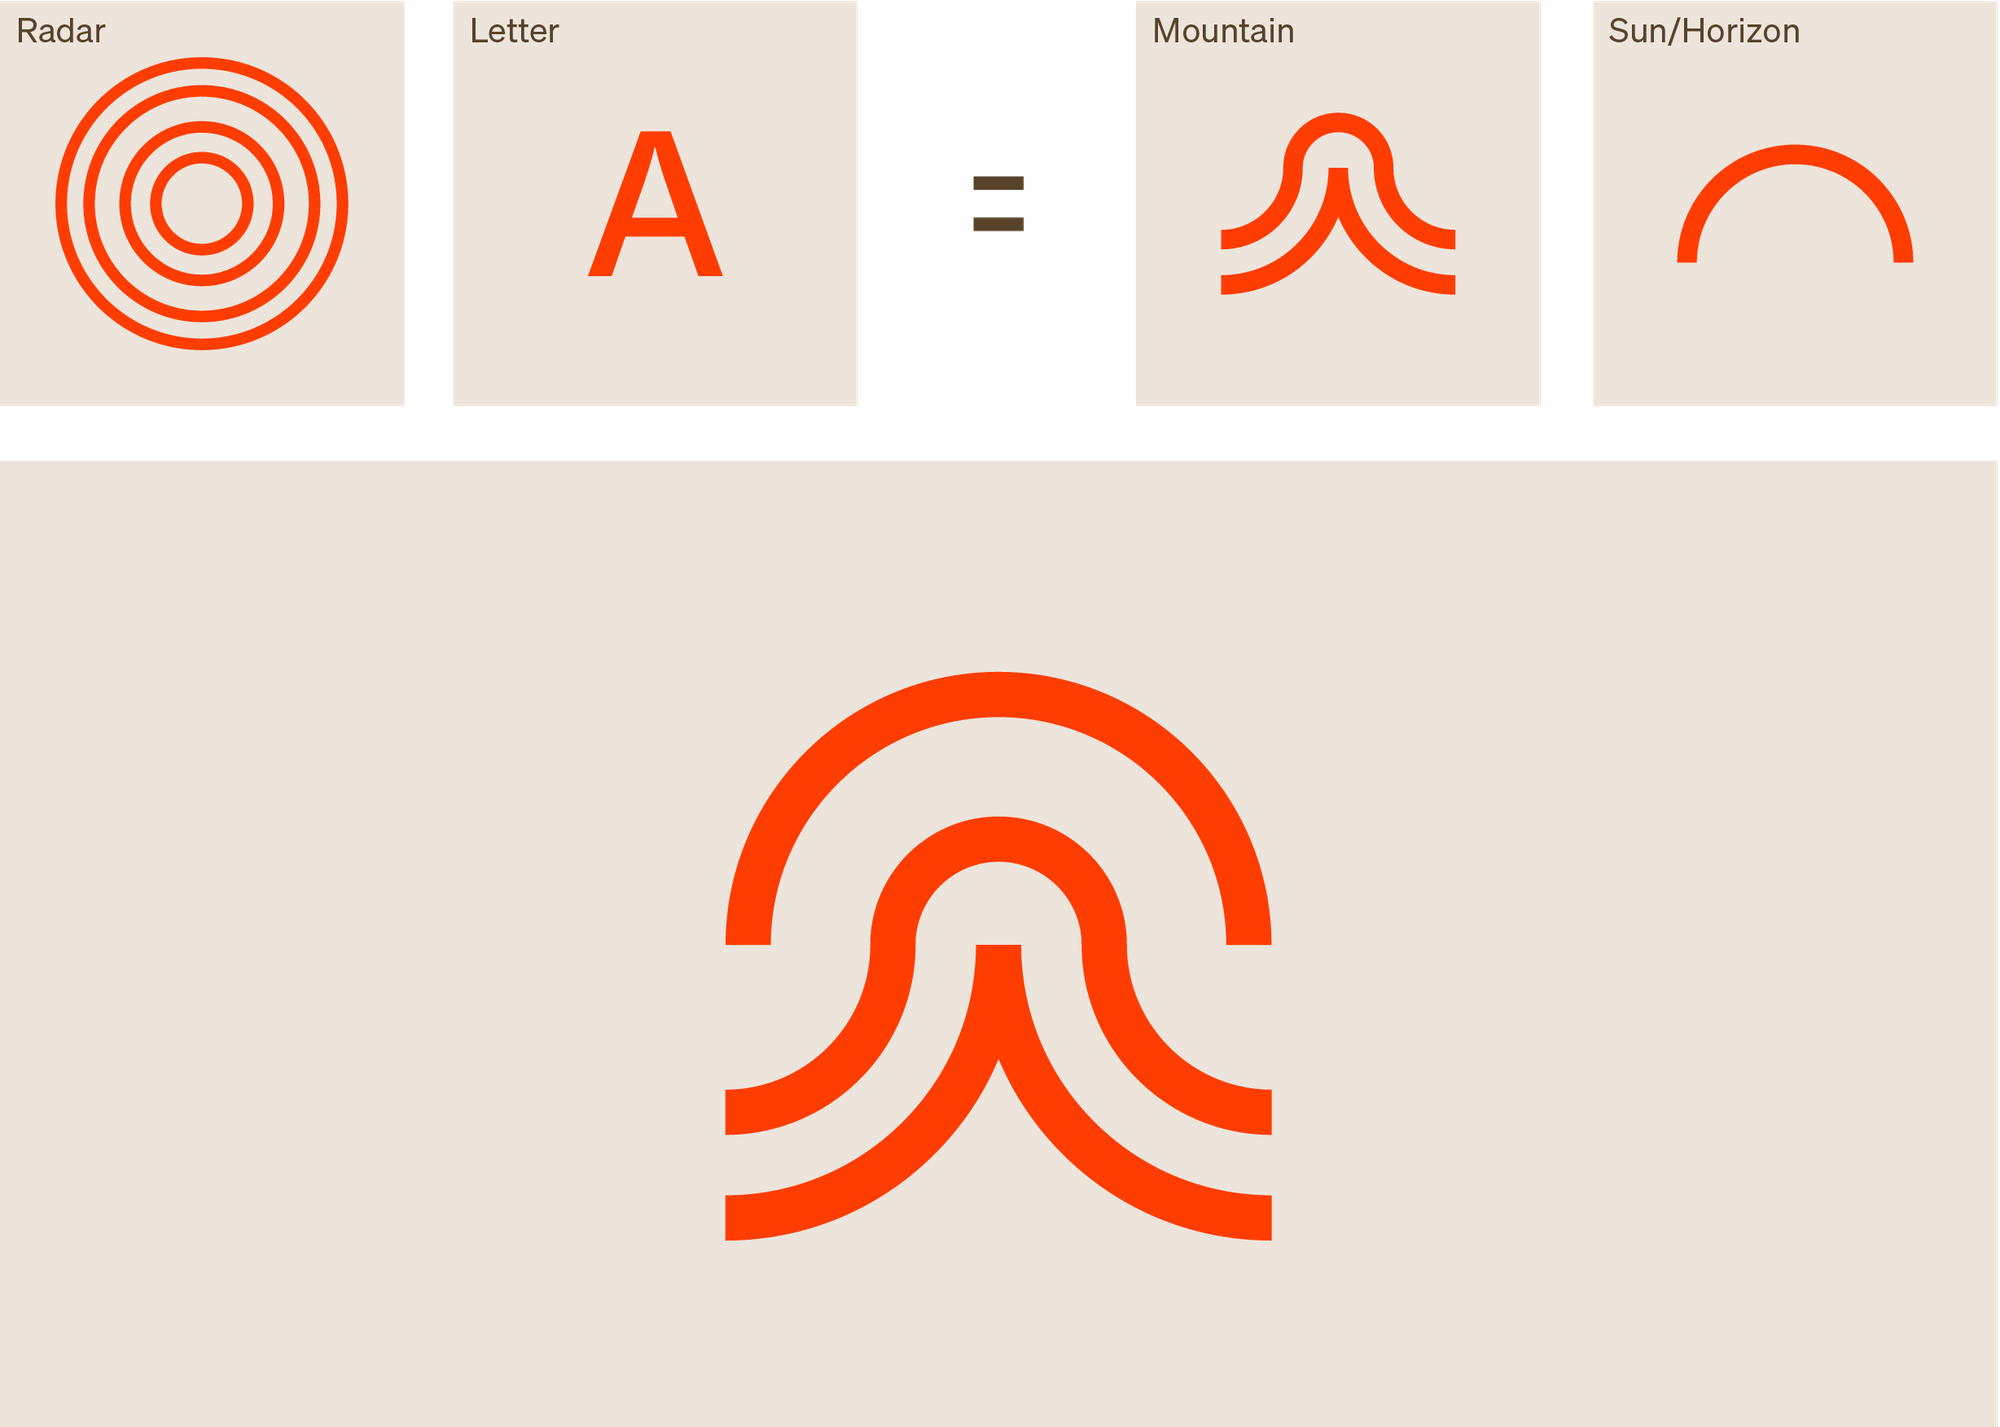 four images showing the acheron logo design evolution